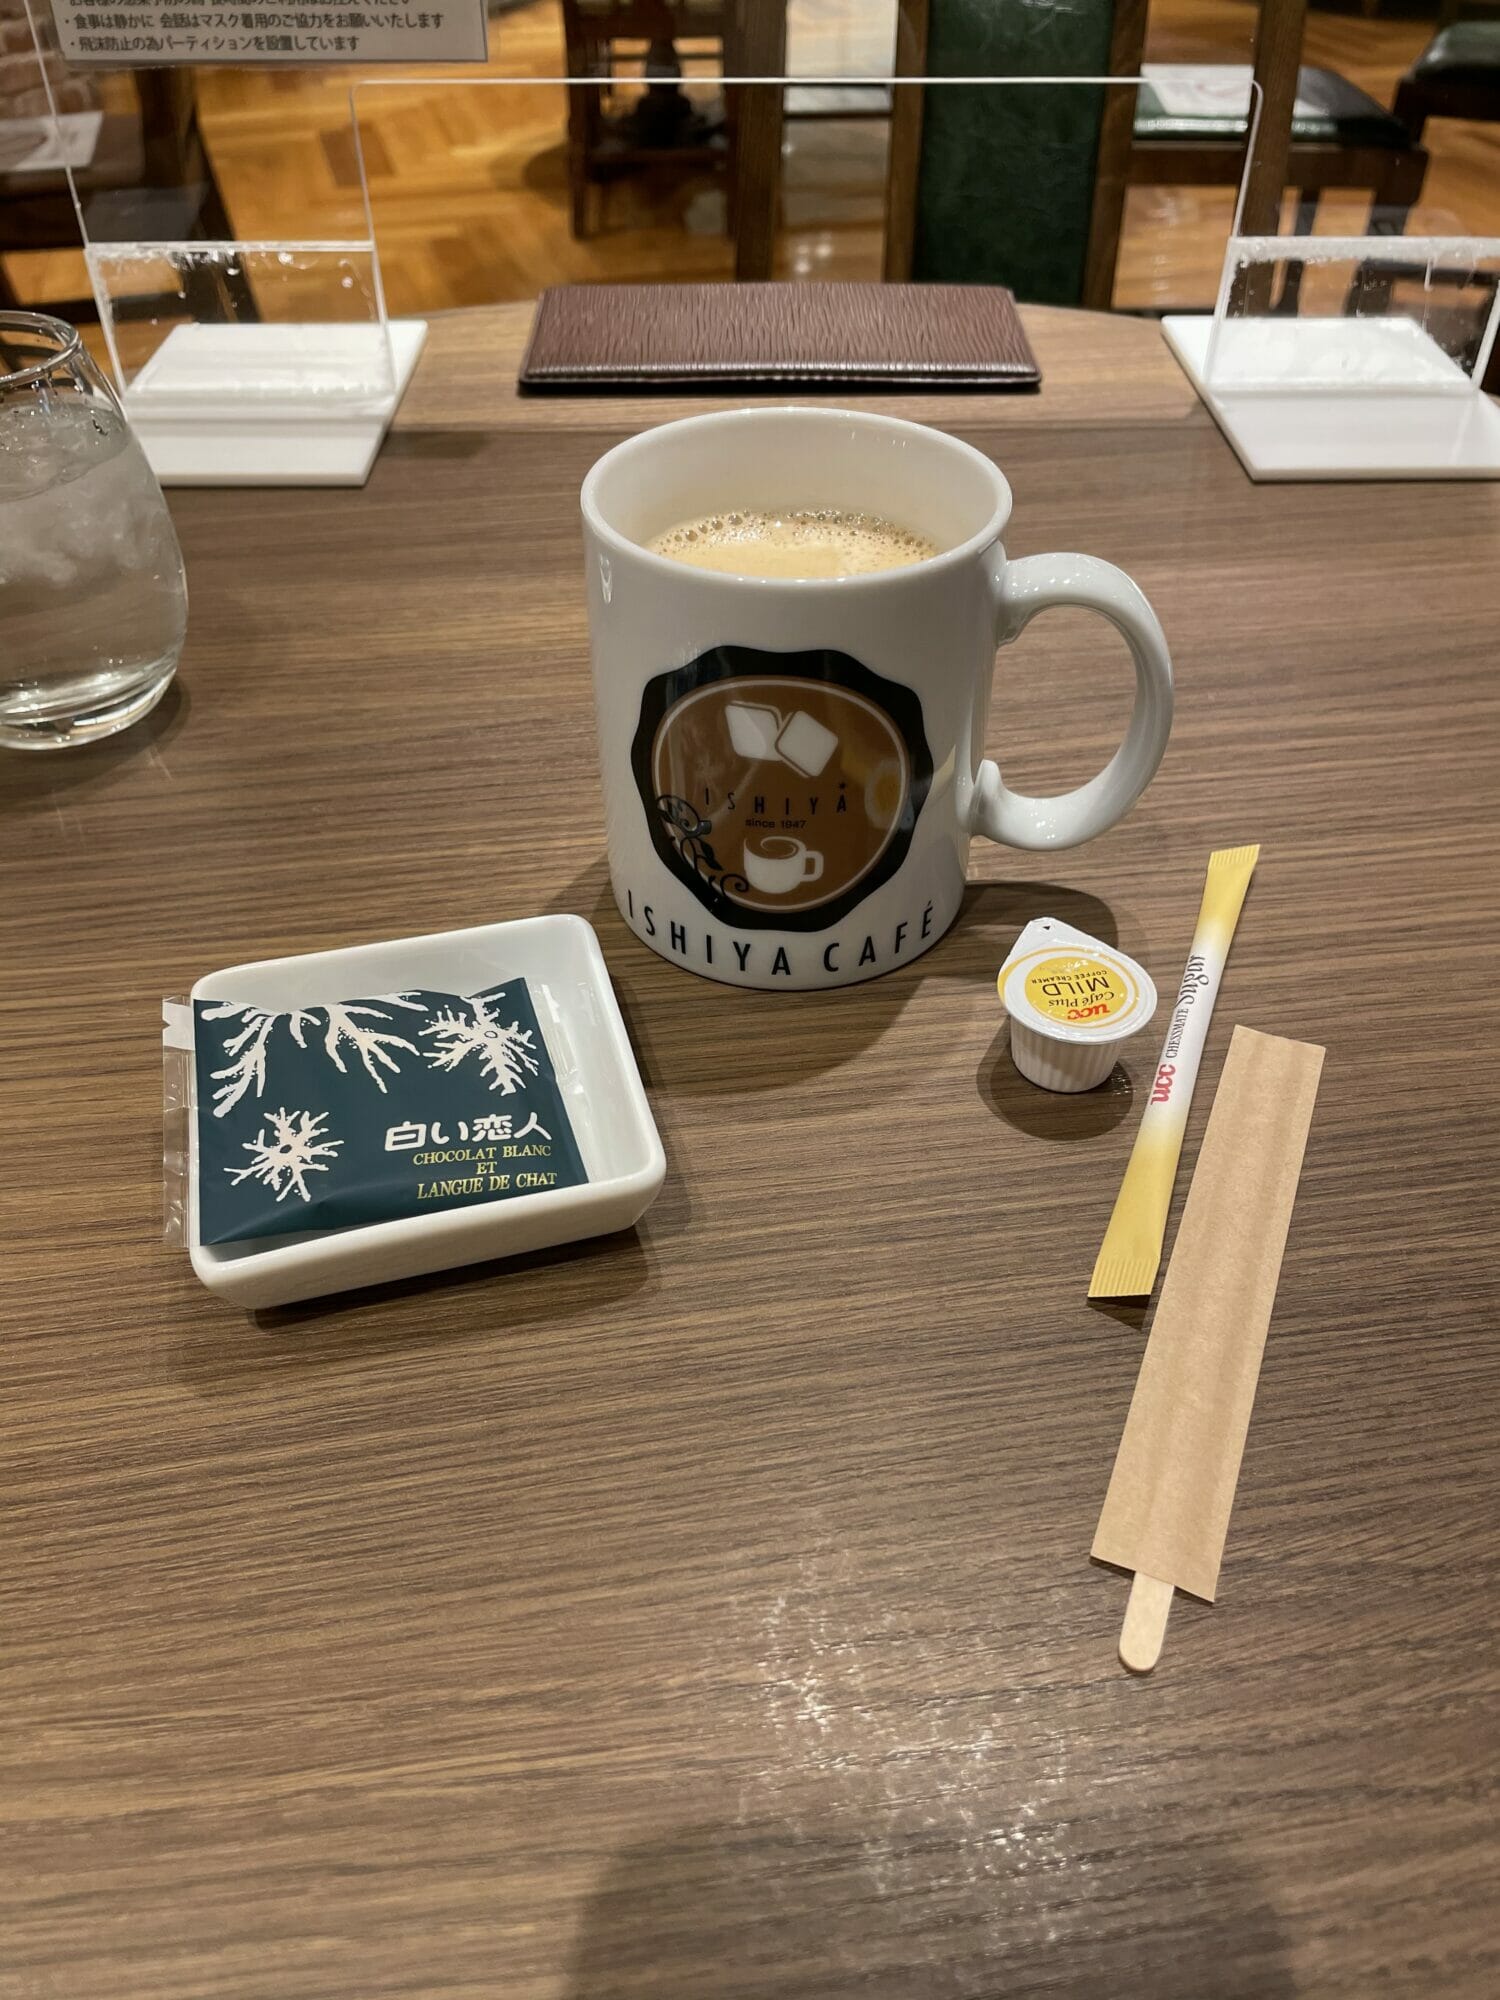 [Cafe] 北海道・新千歳空港ターミナルビル – 北海道のお土産で有名な「白い恋人」のメーカー石屋さんの「ISHIYA CAFE」でブレンドコーヒー  [2021/06/05] ID30235